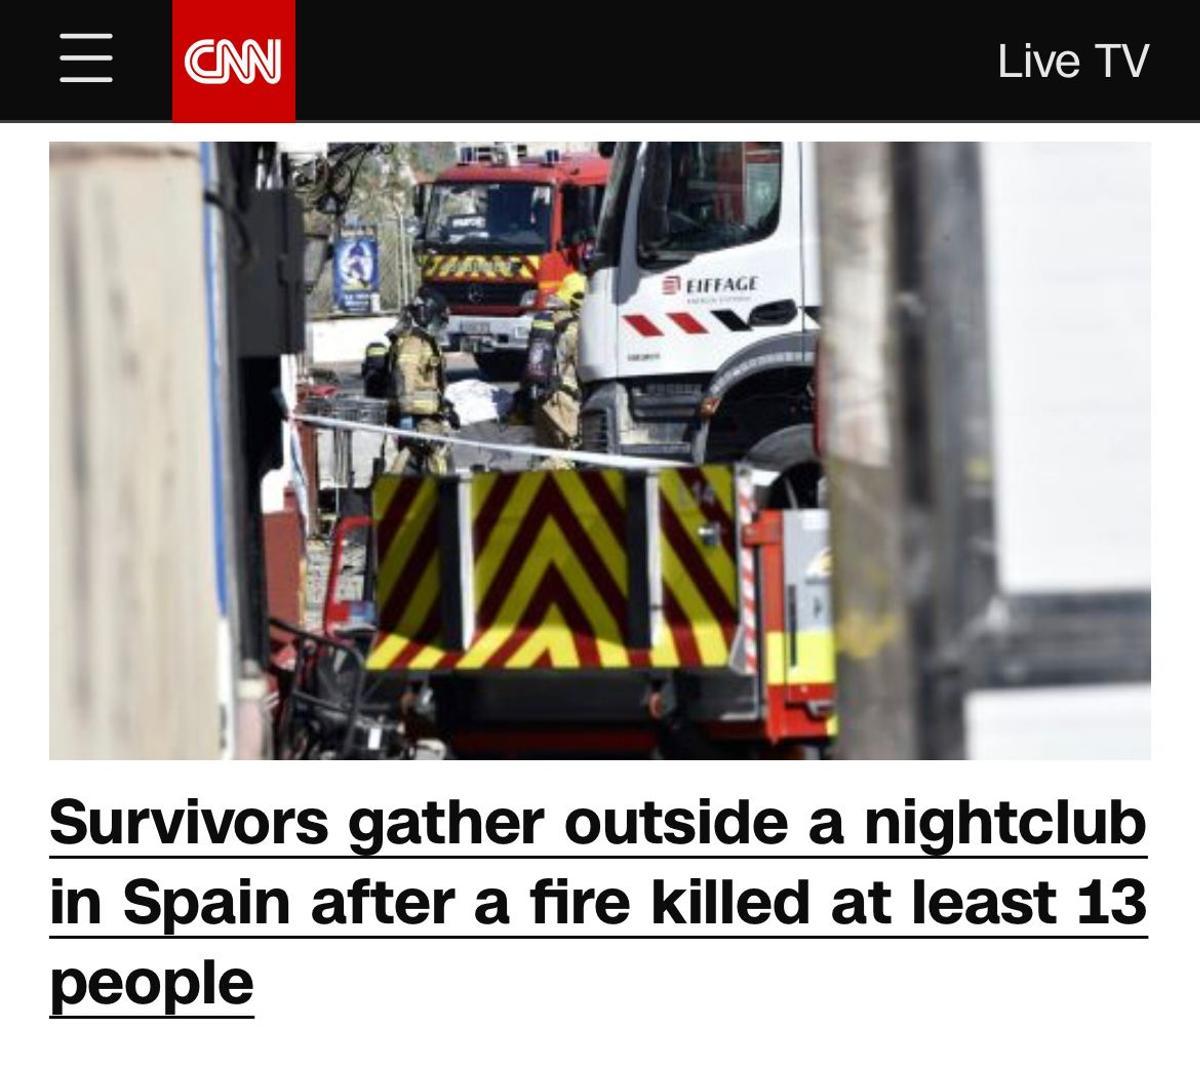 La CNN se hizo eco de la noticia